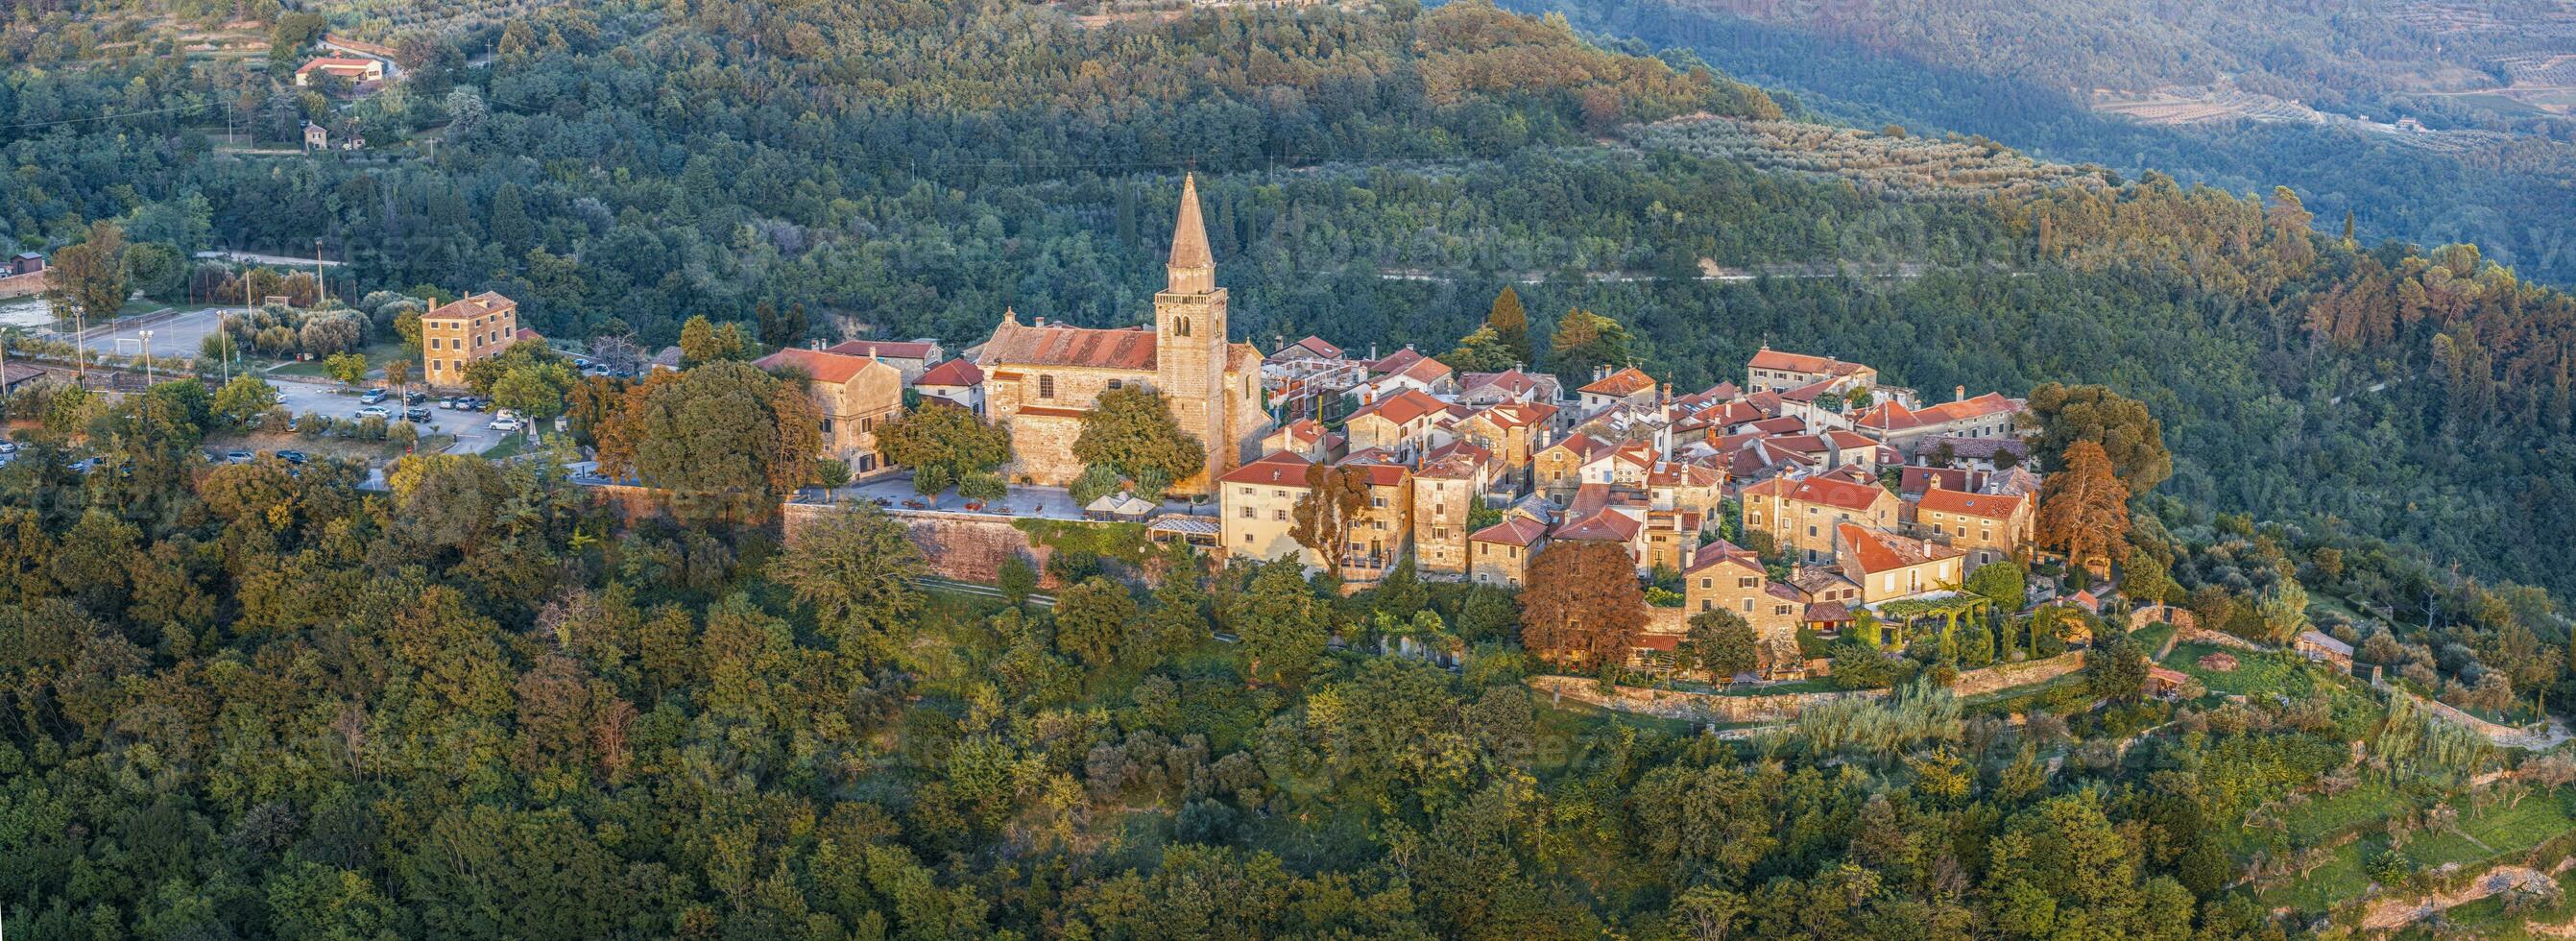 zumbido panorama terminado el histórico artistas pueblo de Groznjan en central istria a puesta de sol foto